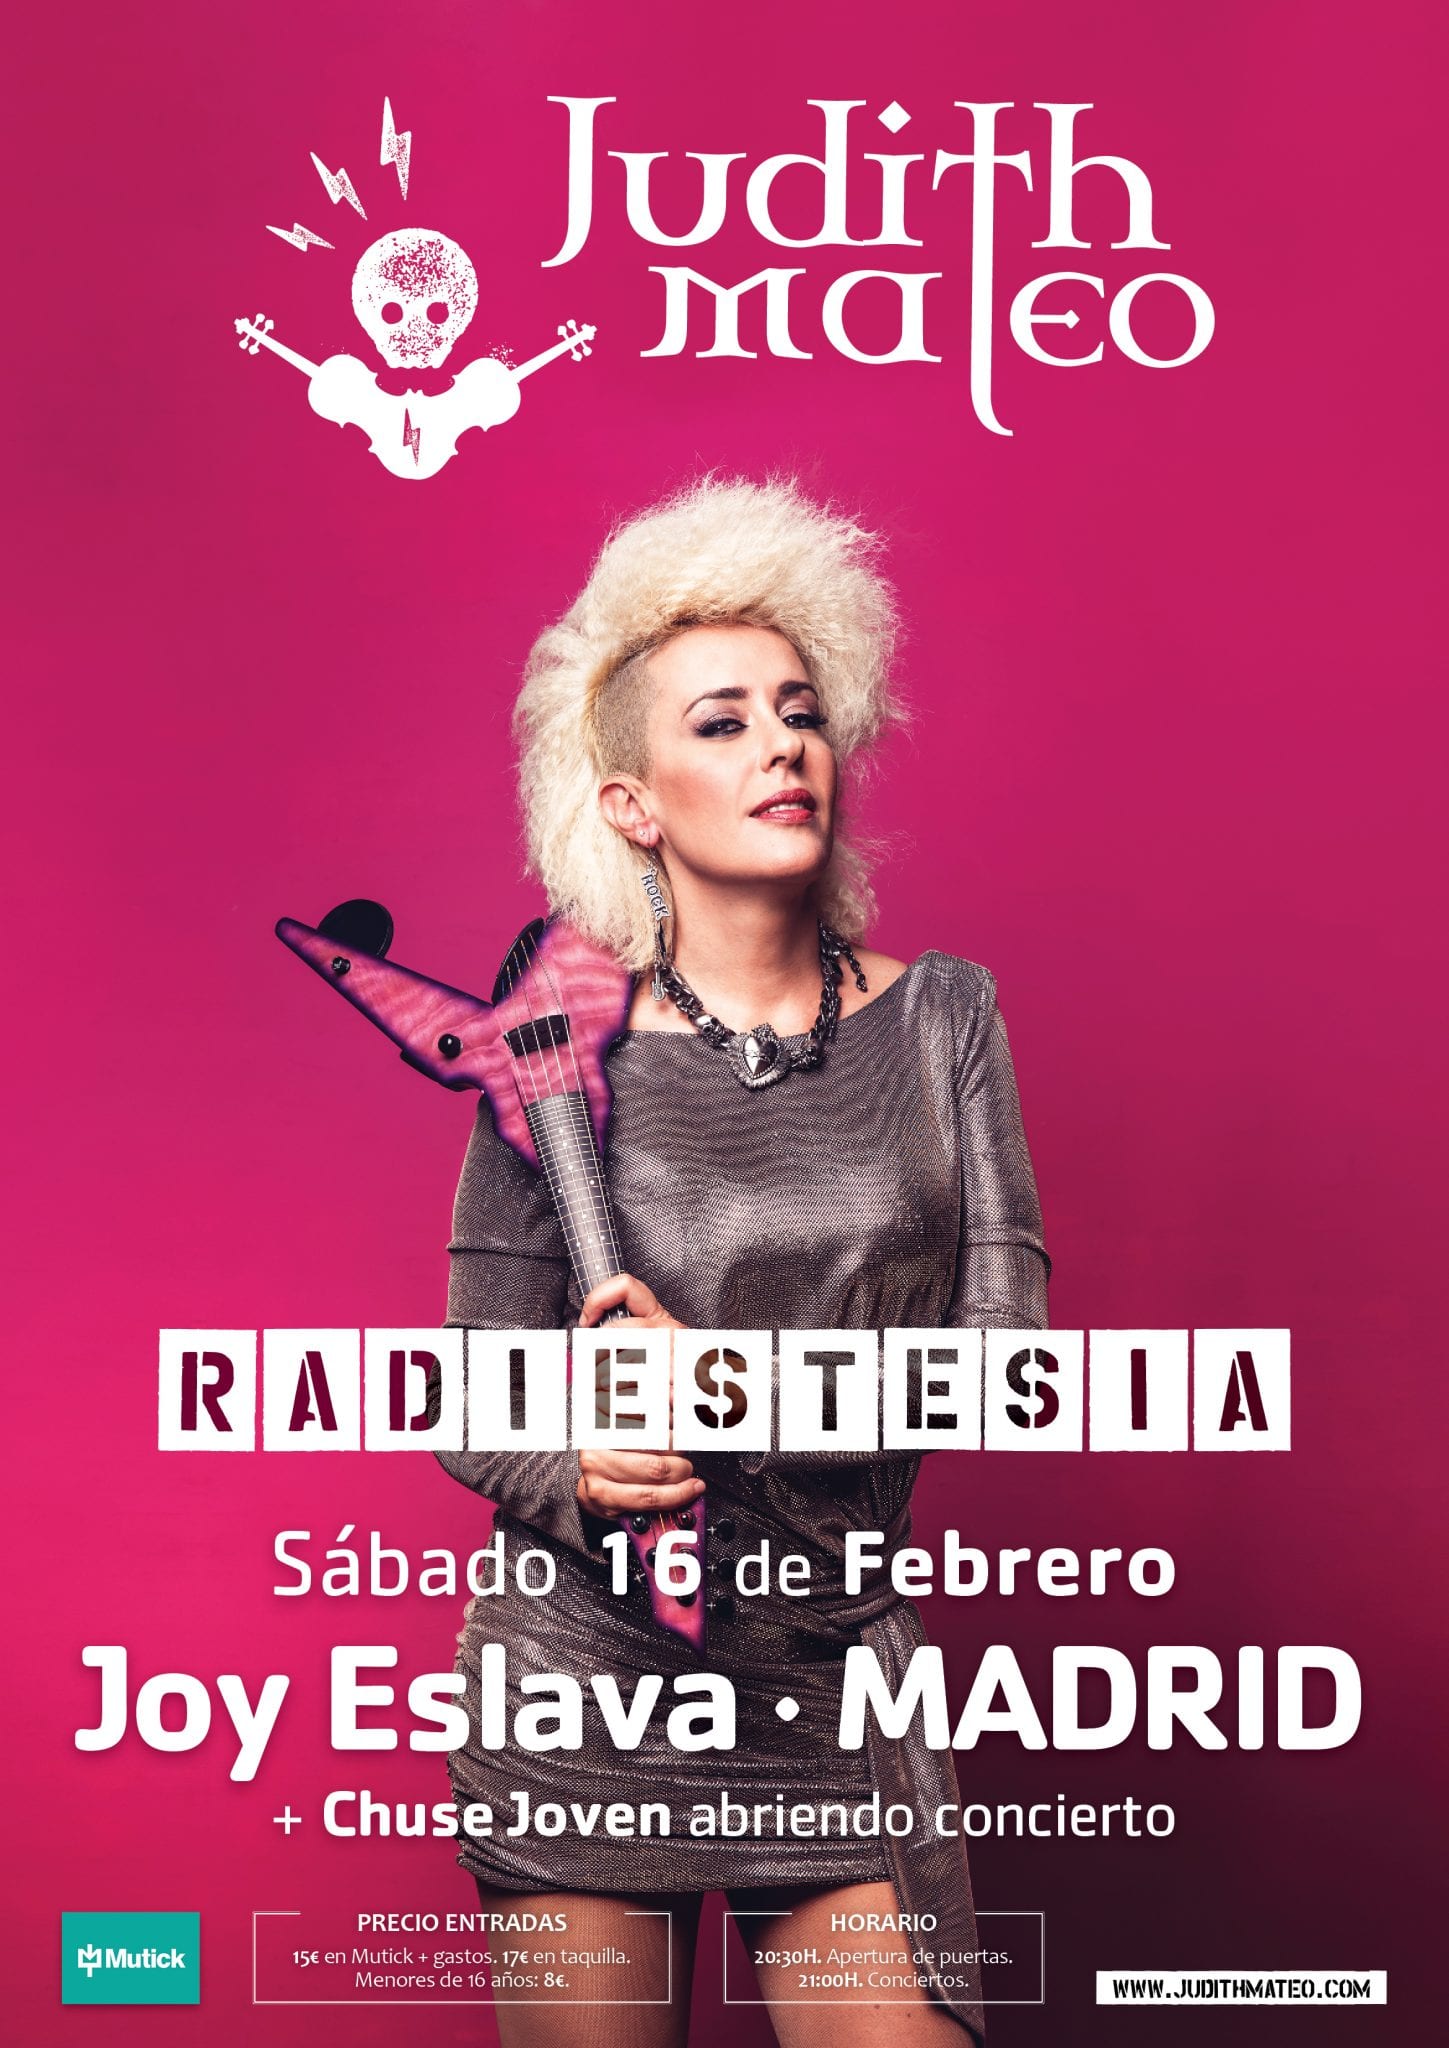 JUDITH MATEO presenta este sábado 16 de Febrero RADIESTESIA en Joy eslava de Madrid